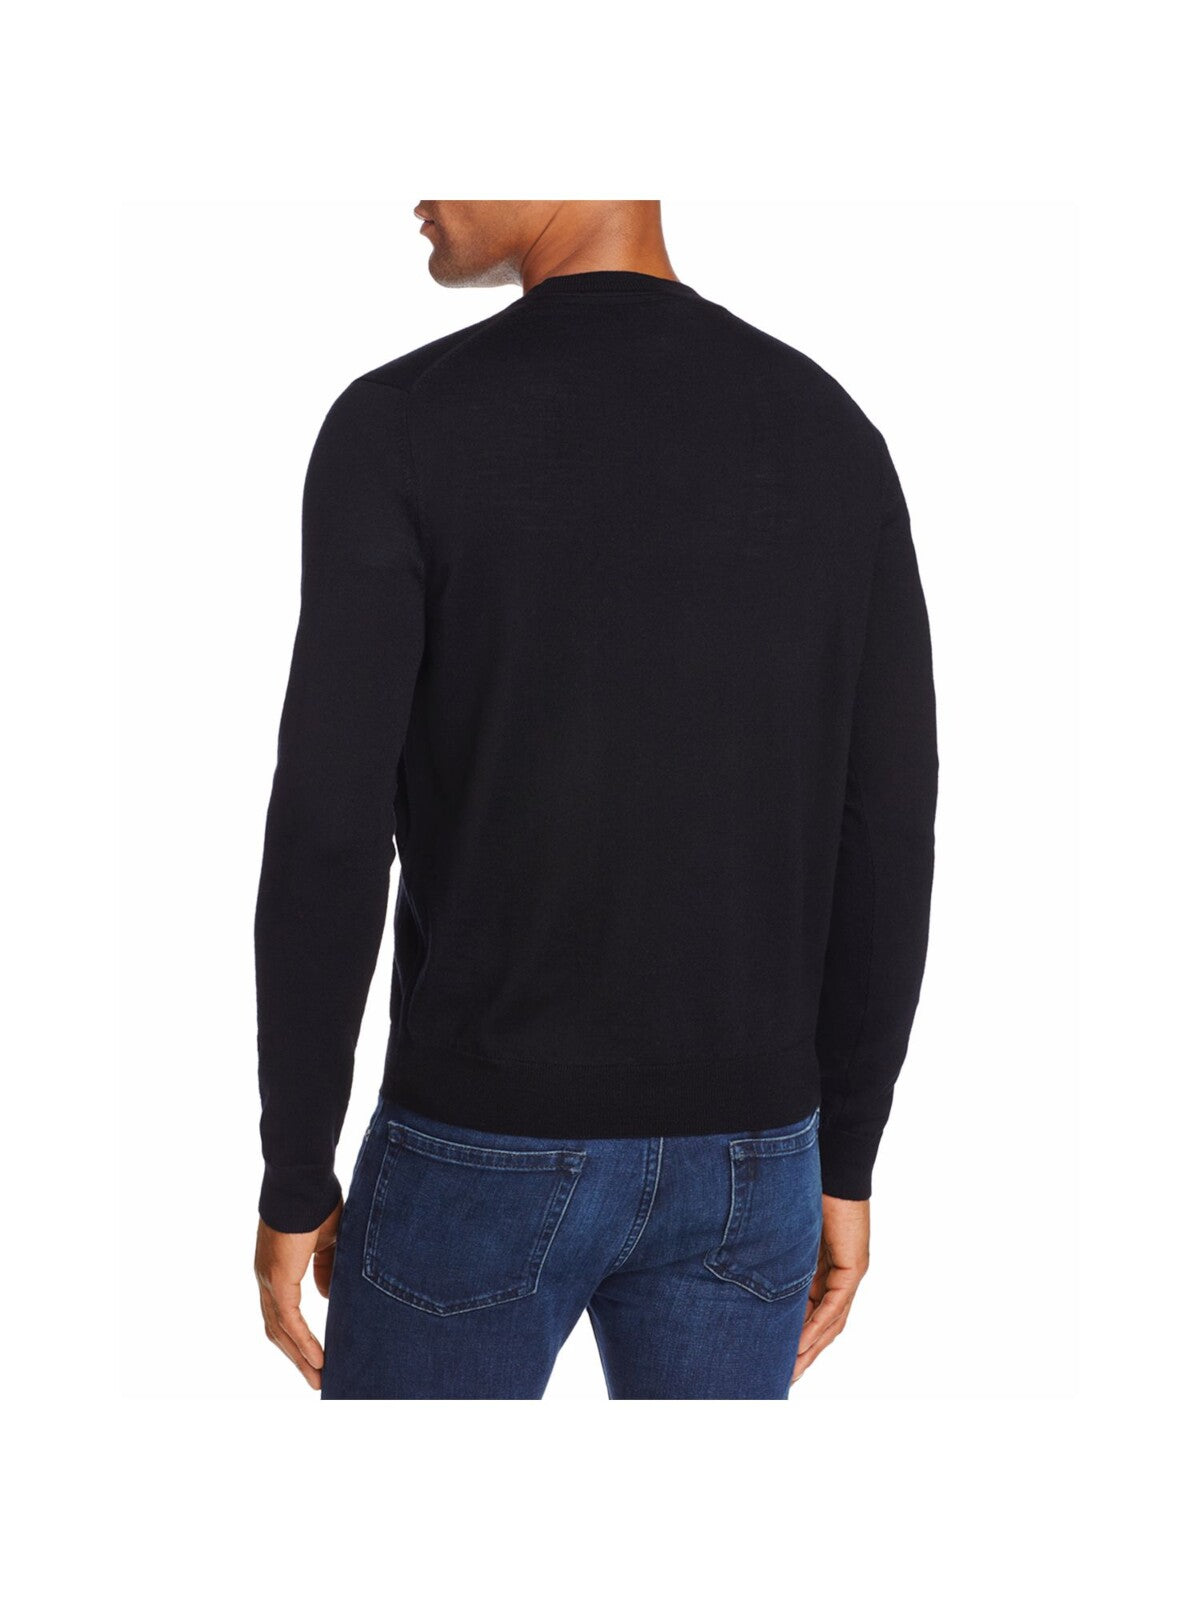 THE MENS STORE Mens Black V Neck Merino Blend Pullover Sweater S